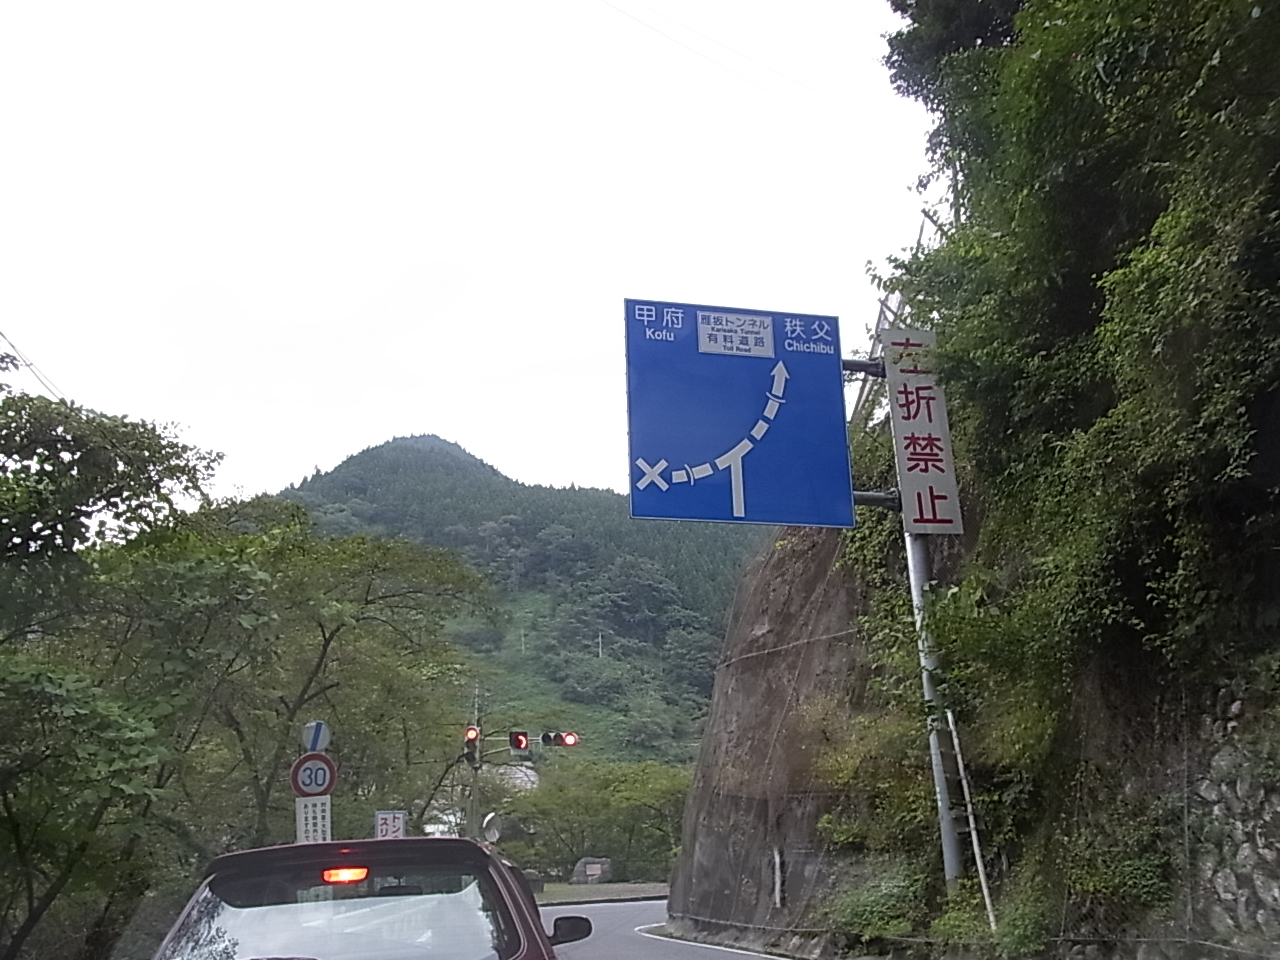 駒ヶ滝トンネルの手前の信号